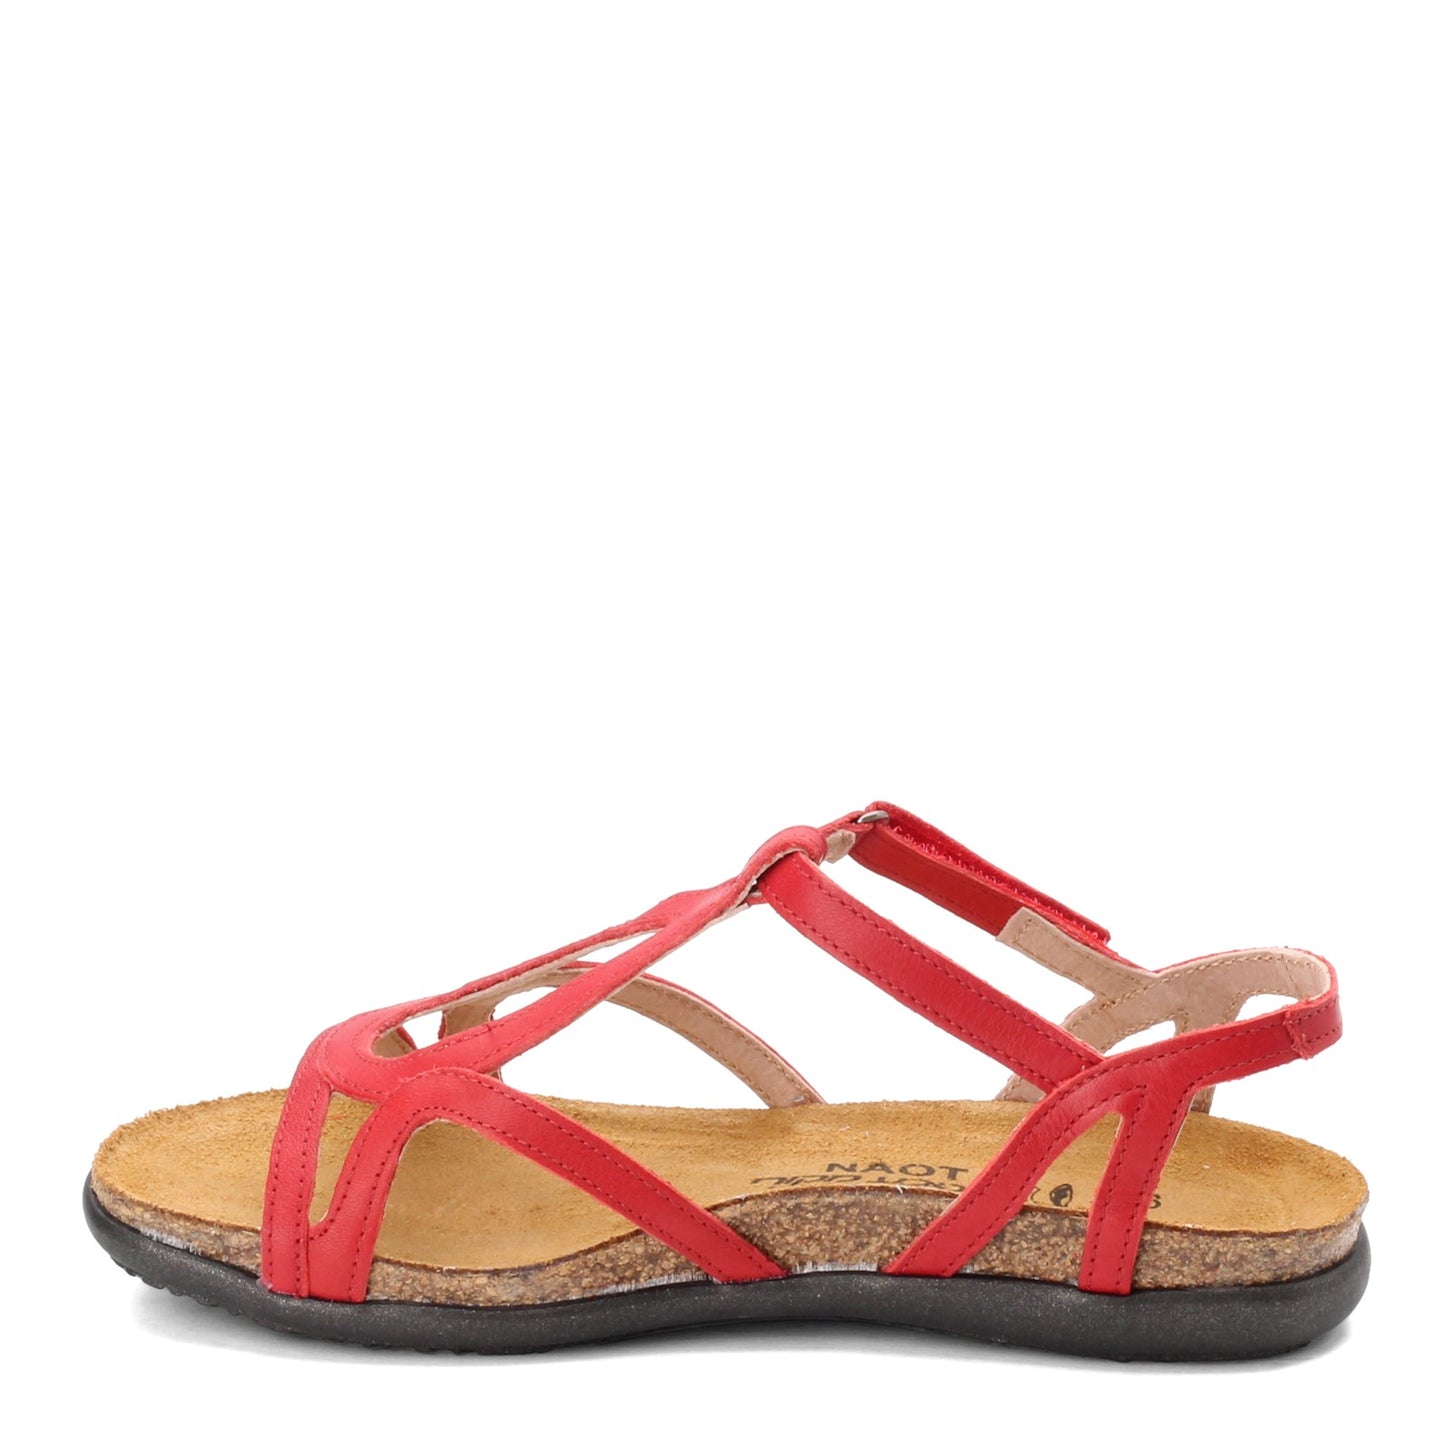 Peltz Shoes  Women's Naot Dorith Sandal Kiss Red Lthr 4710-C60